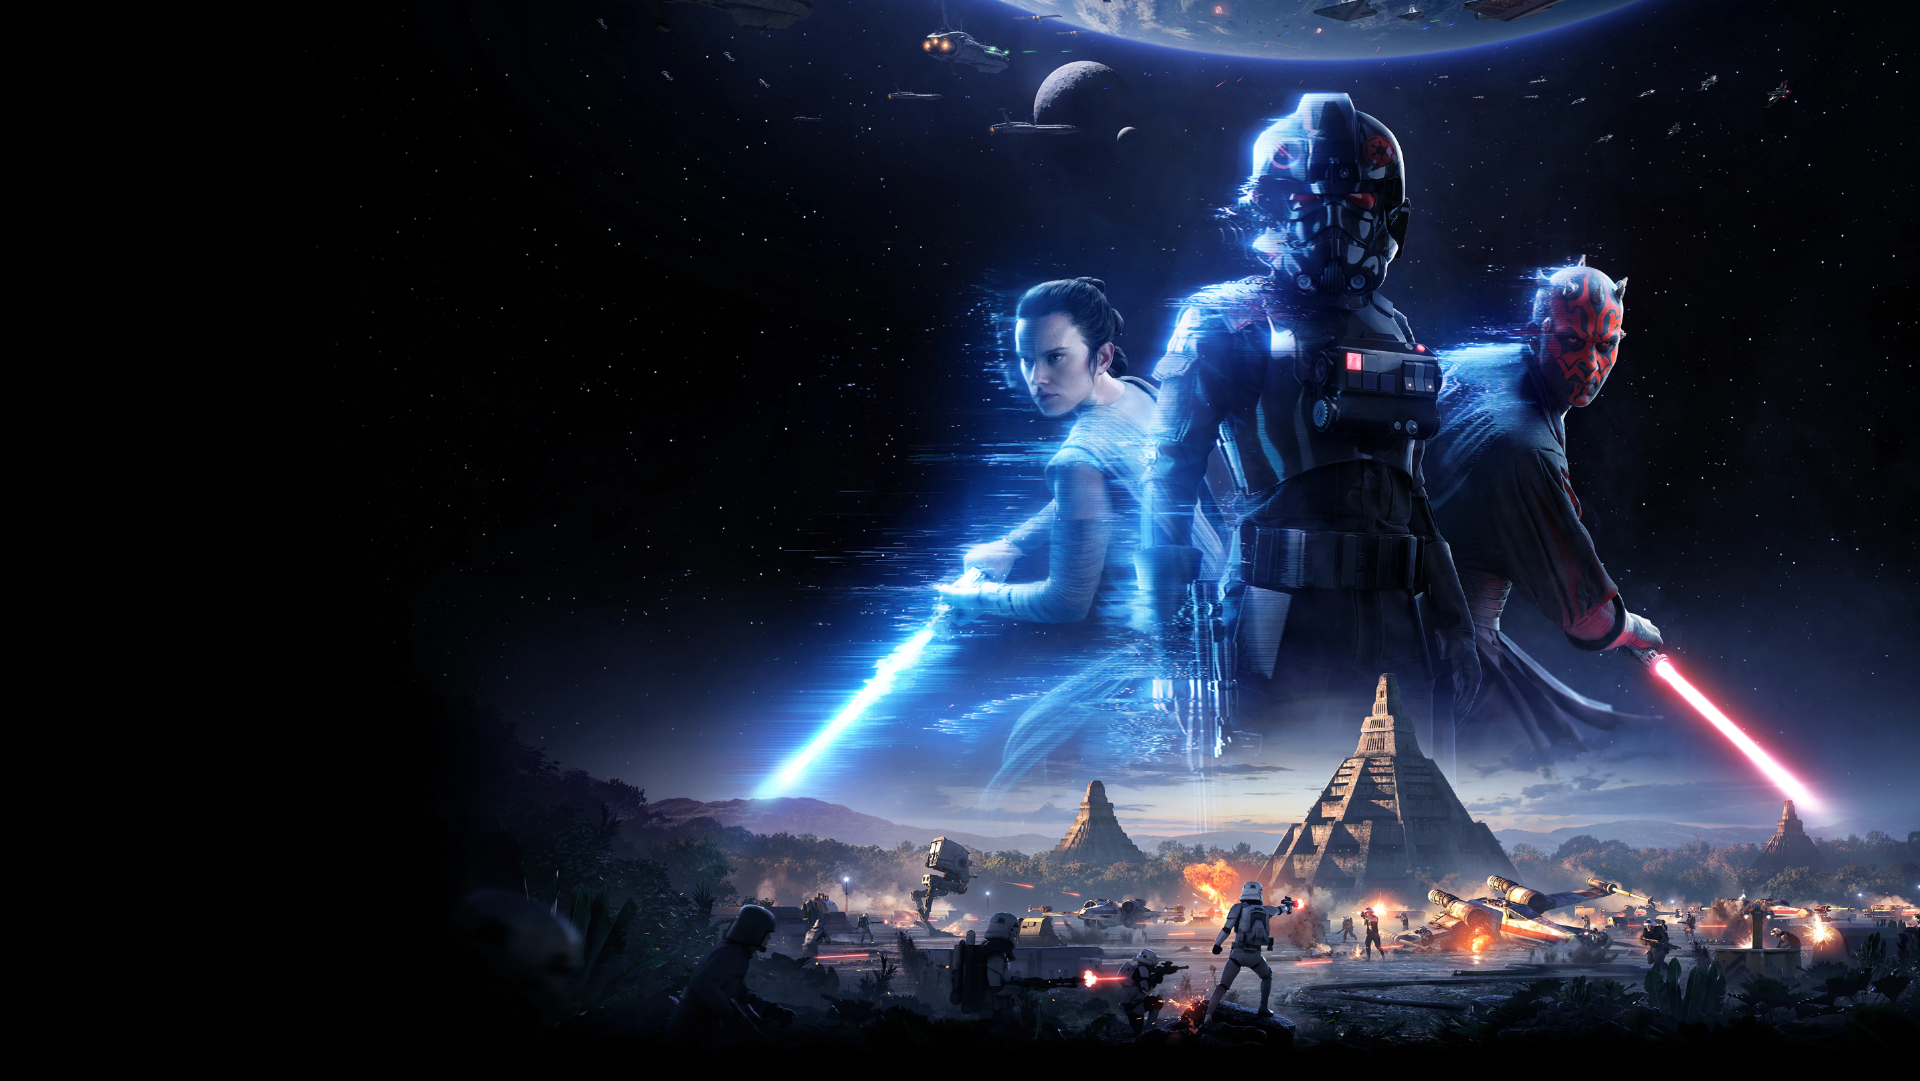 Werbegrafik für Battlefront II mit Rey, Imperial Trooper und Maul.